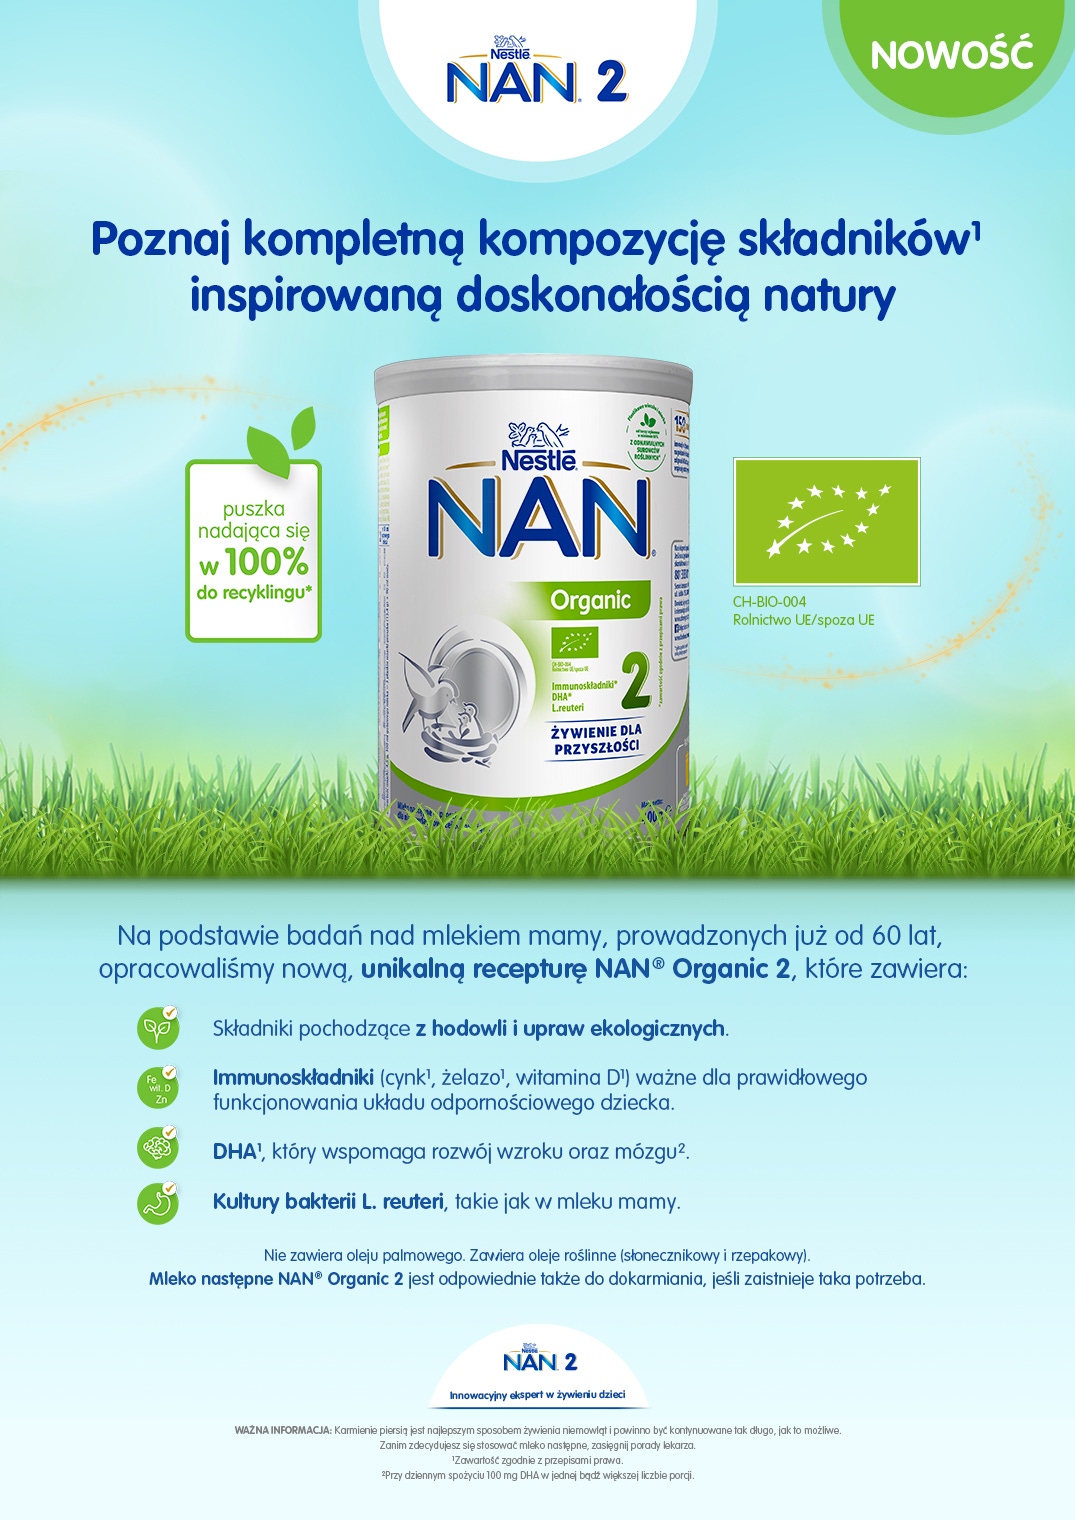 Poznaj NAN® Organic 2